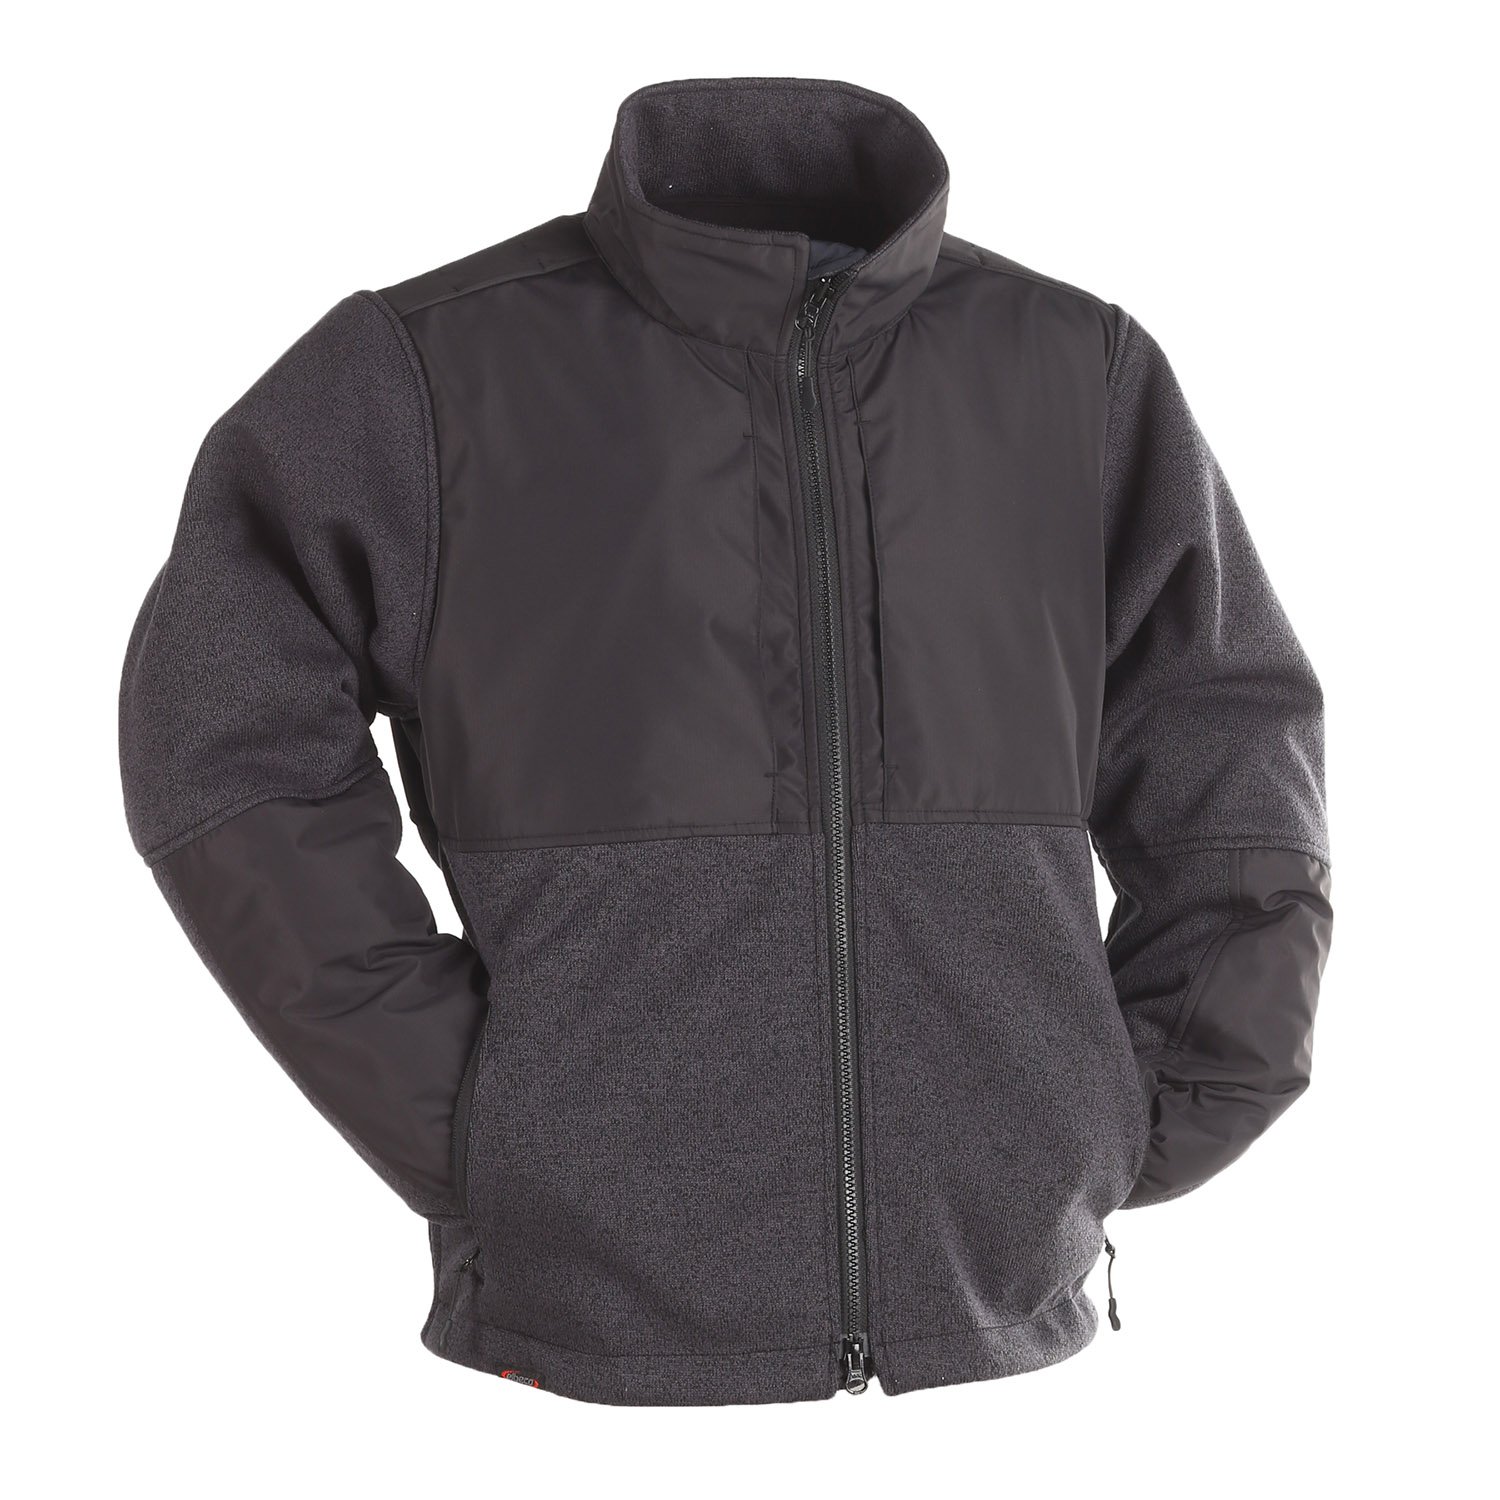 Elbeco Shield Apex Crossover Softshell Jacket